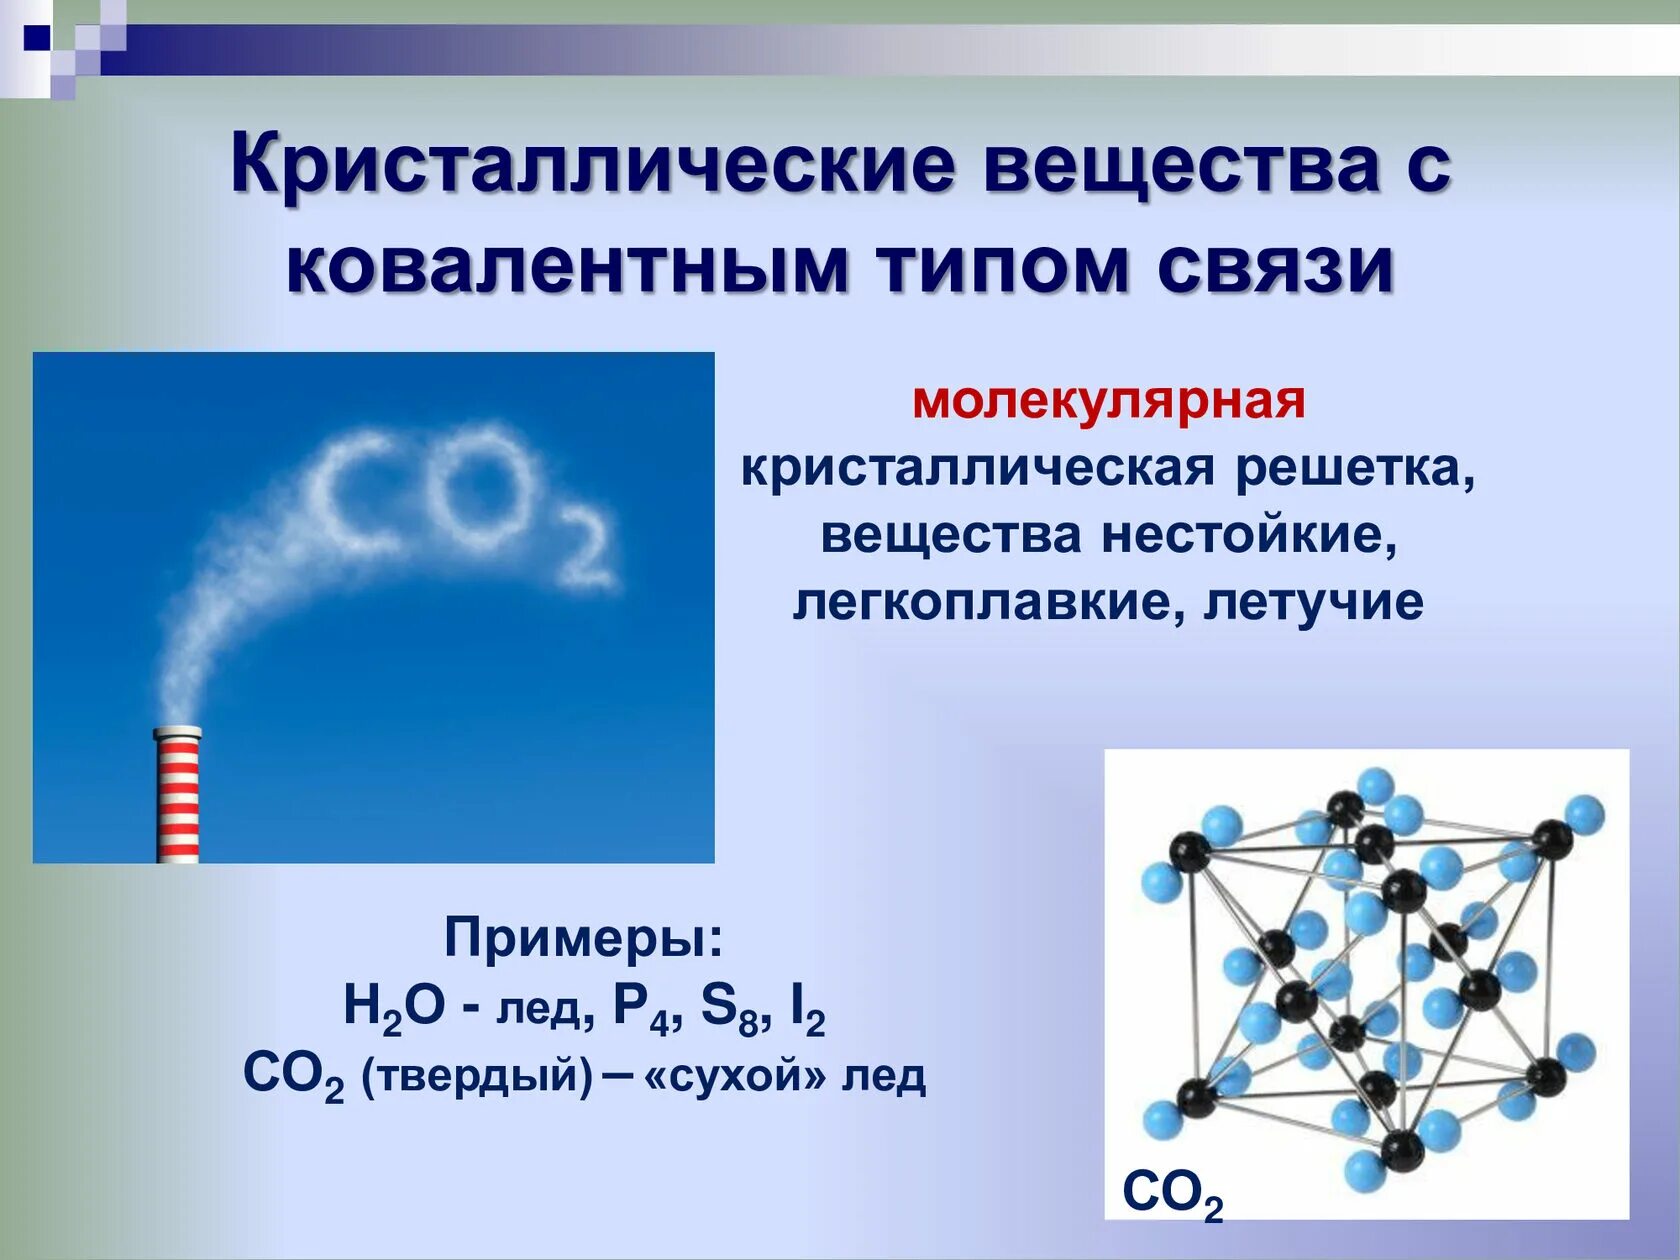 Ковалентная полярная тип кристаллической решетки. Вещества с ковалентным типом связи. Кристаллические вещества. Молекулярная связь. Молекулярная кристаллическая связь.